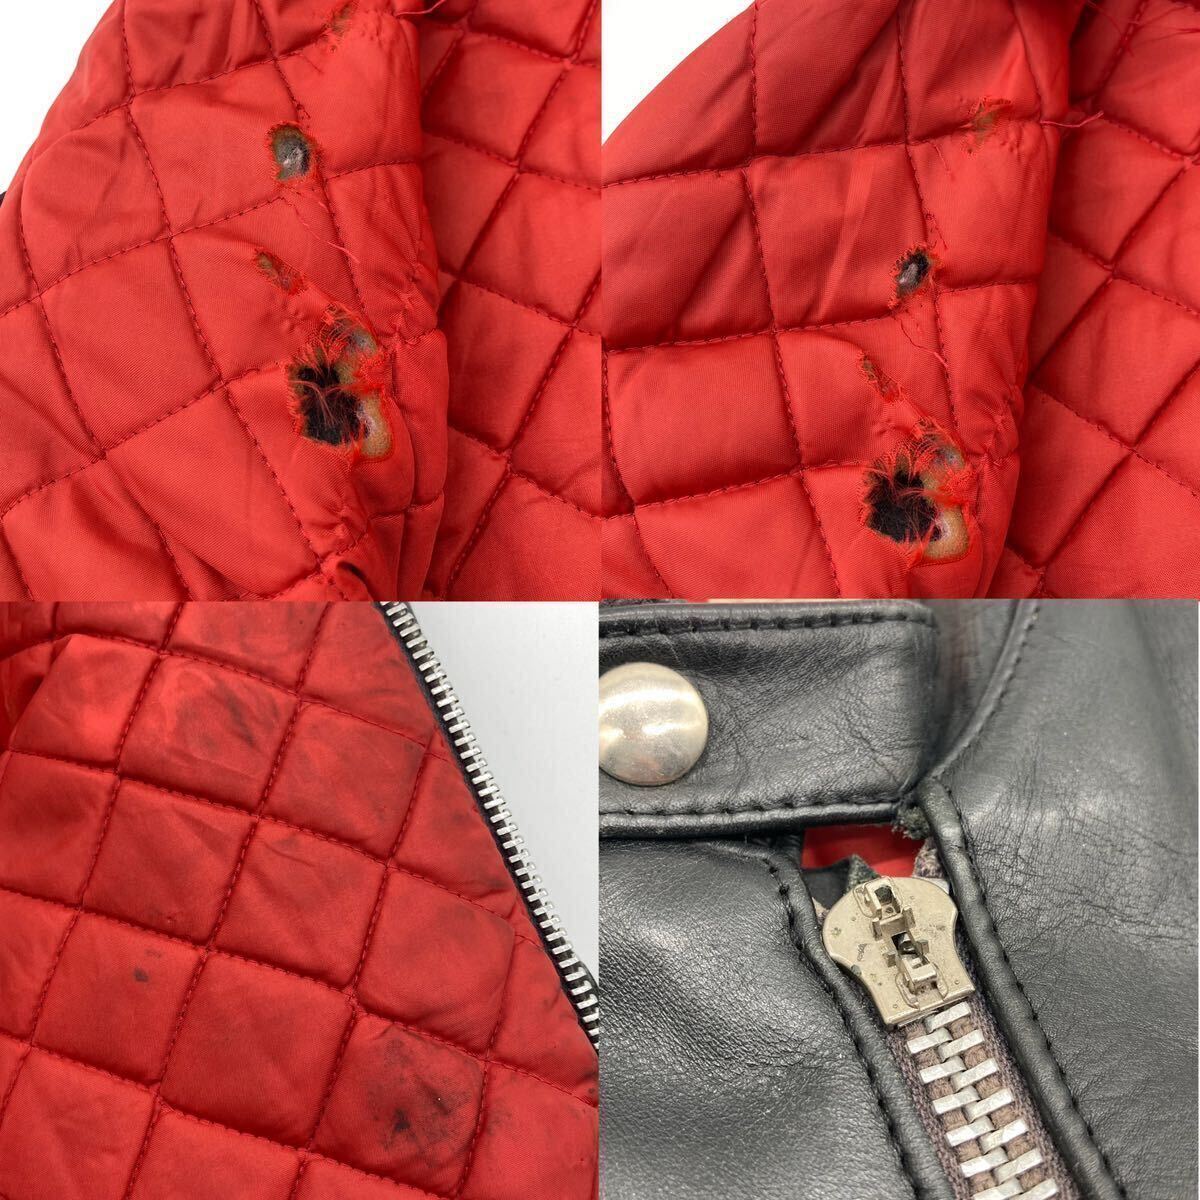  в настоящее время  вещь  Lewis leather ... стул  кожа  70s  супер   fan  ... ... пиджак   QUILTING   винтажный   REAL HIDE (38.40 состояние  )